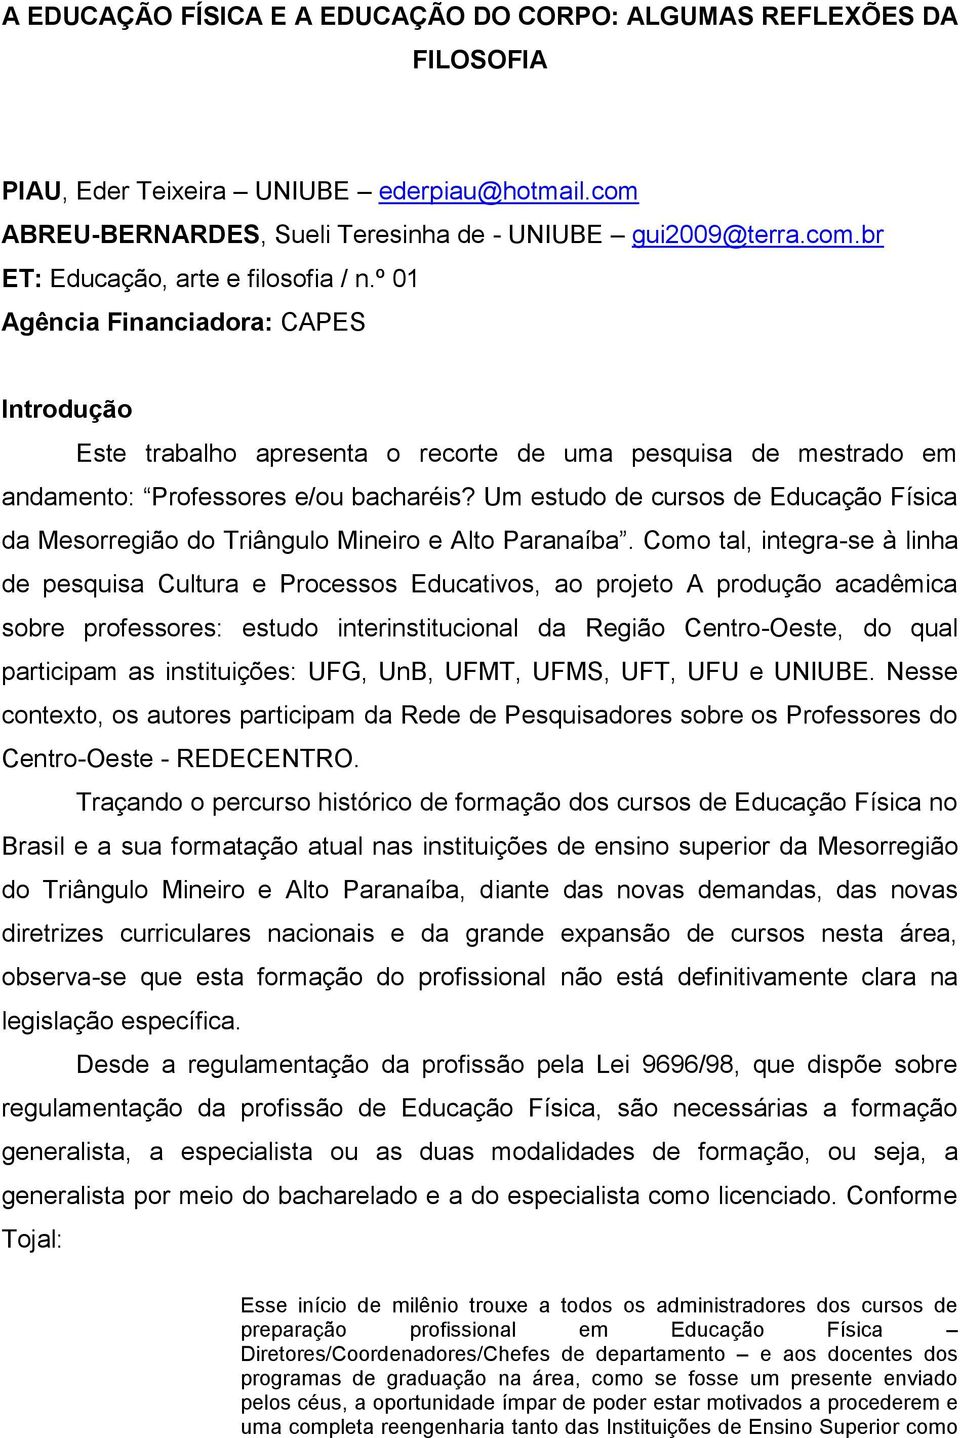 Um estudo de cursos de Educação Física da Mesorregião do Triângulo Mineiro e Alto Paranaíba.